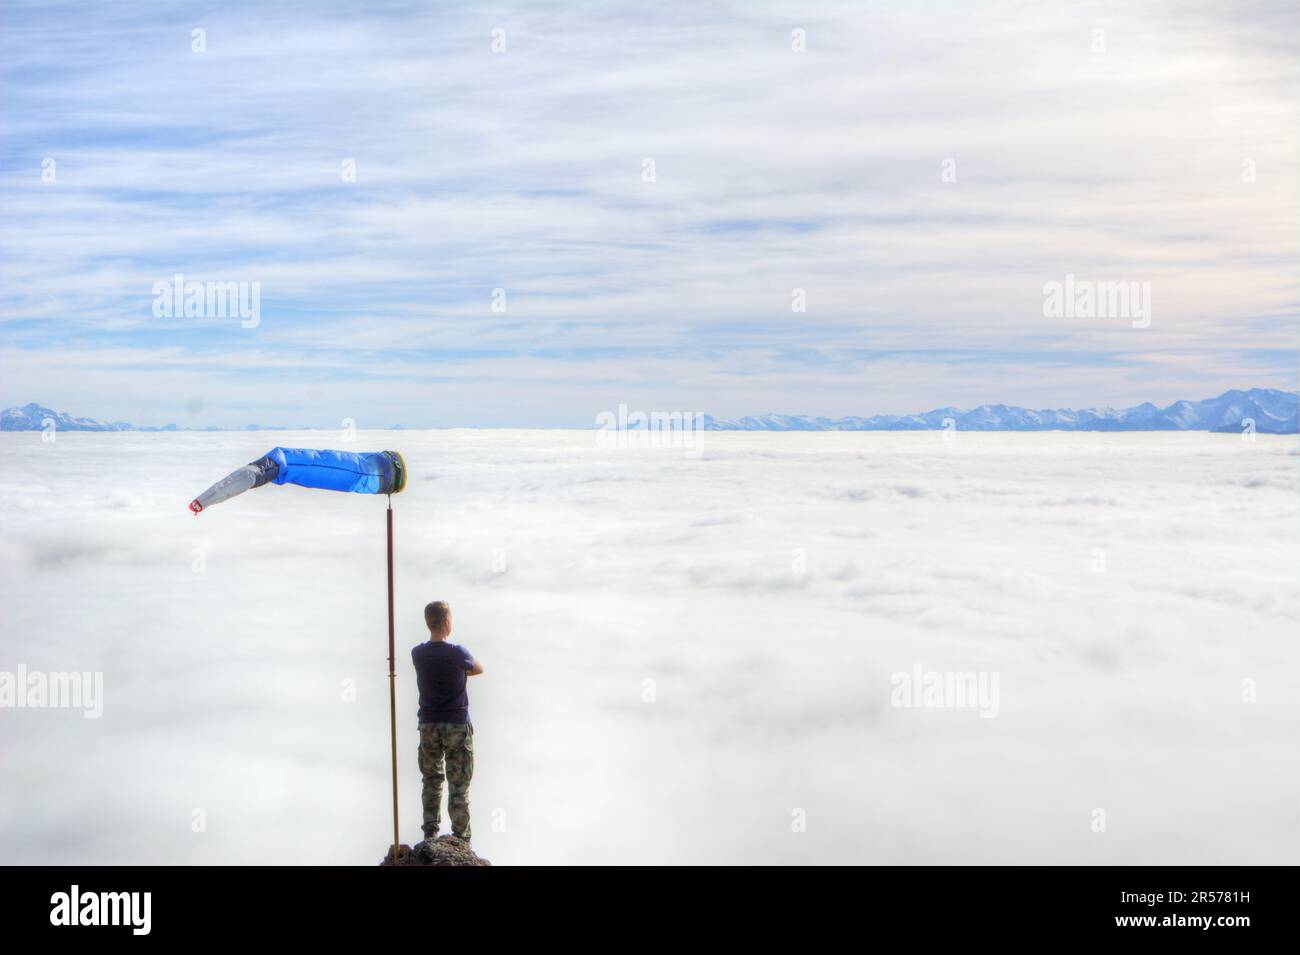 Un homme avec une grande girouette d'hiver regarde d'en haut les nuages sans neige couvrant une vallée de montagne à Bariloche, en Argentine Banque D'Images